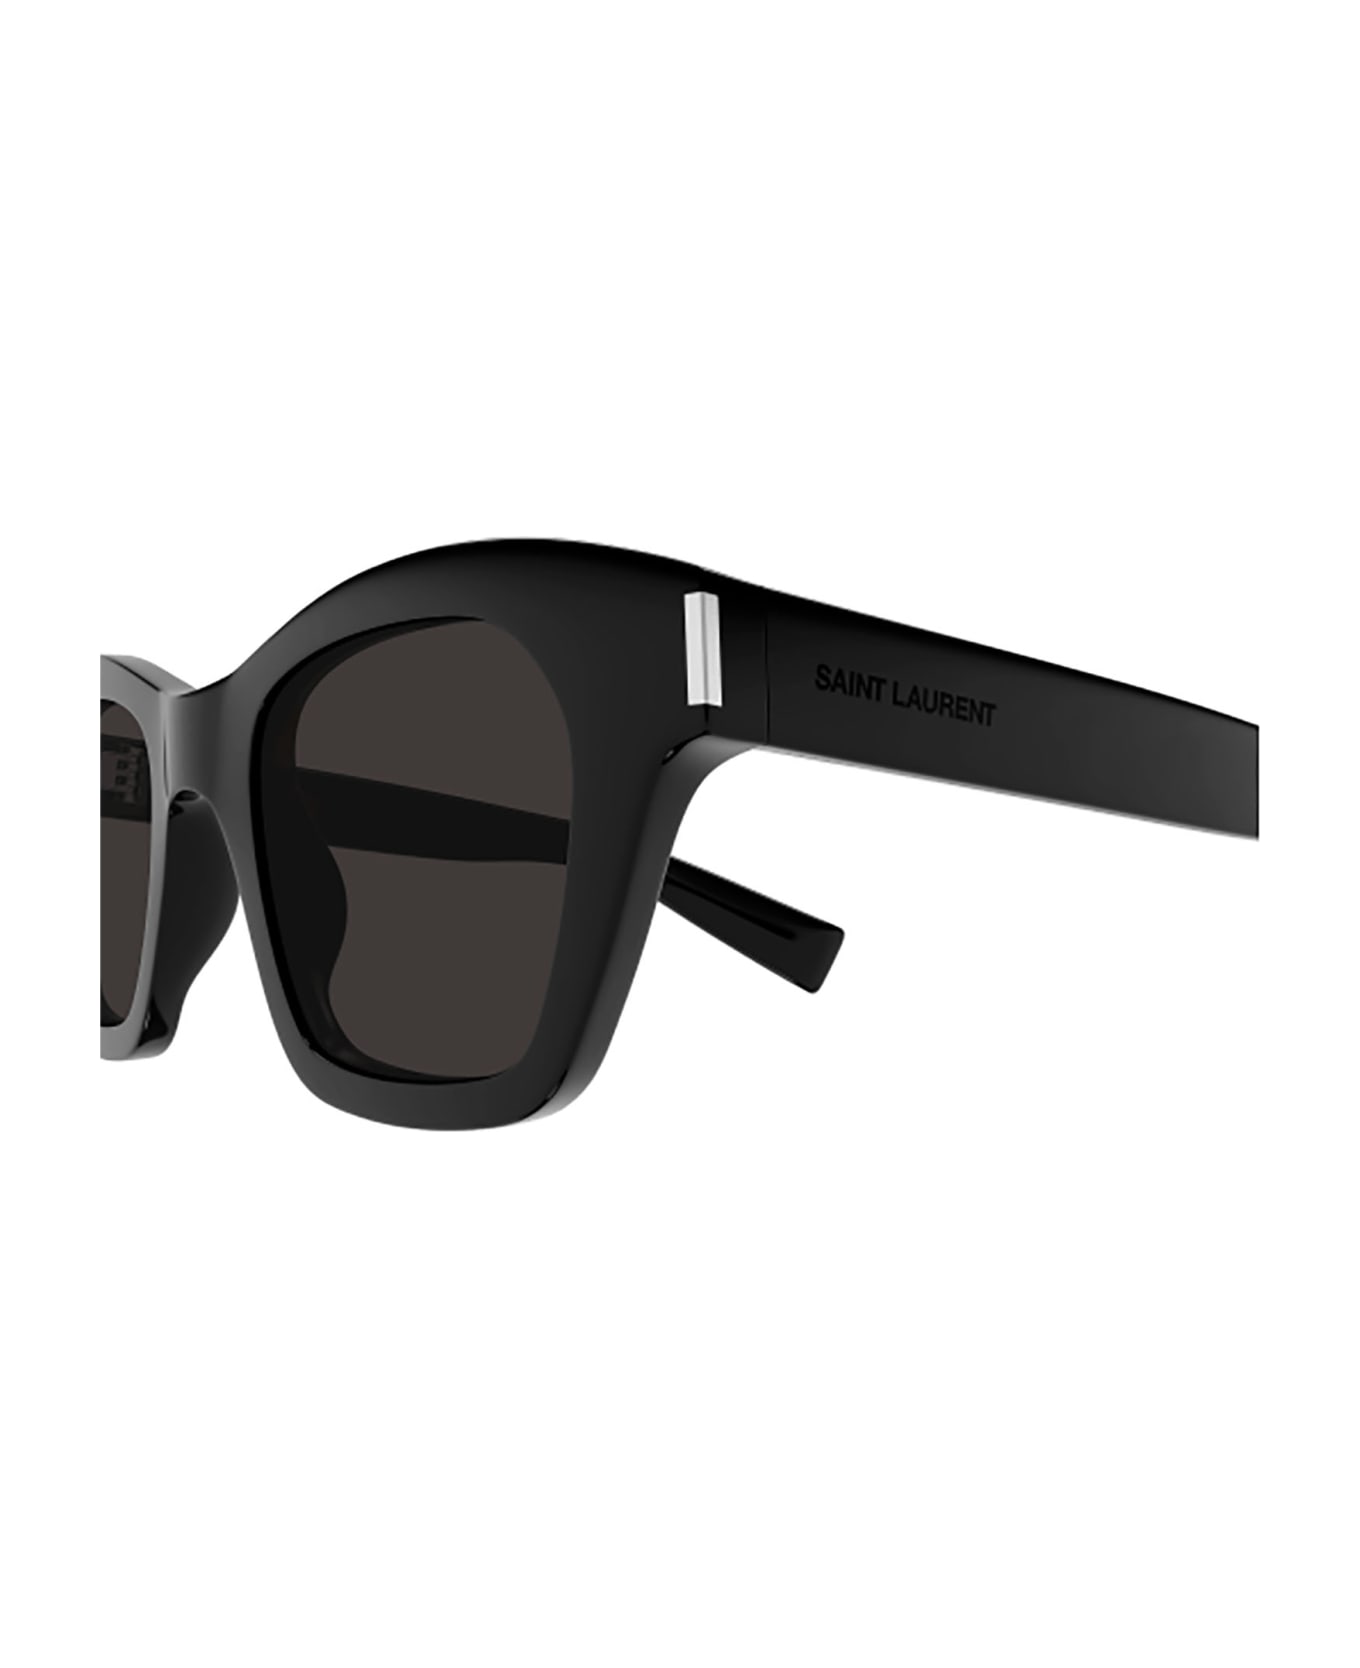 Saint Laurent Eyewear Sl 592 Sunglasses - 001 black black black